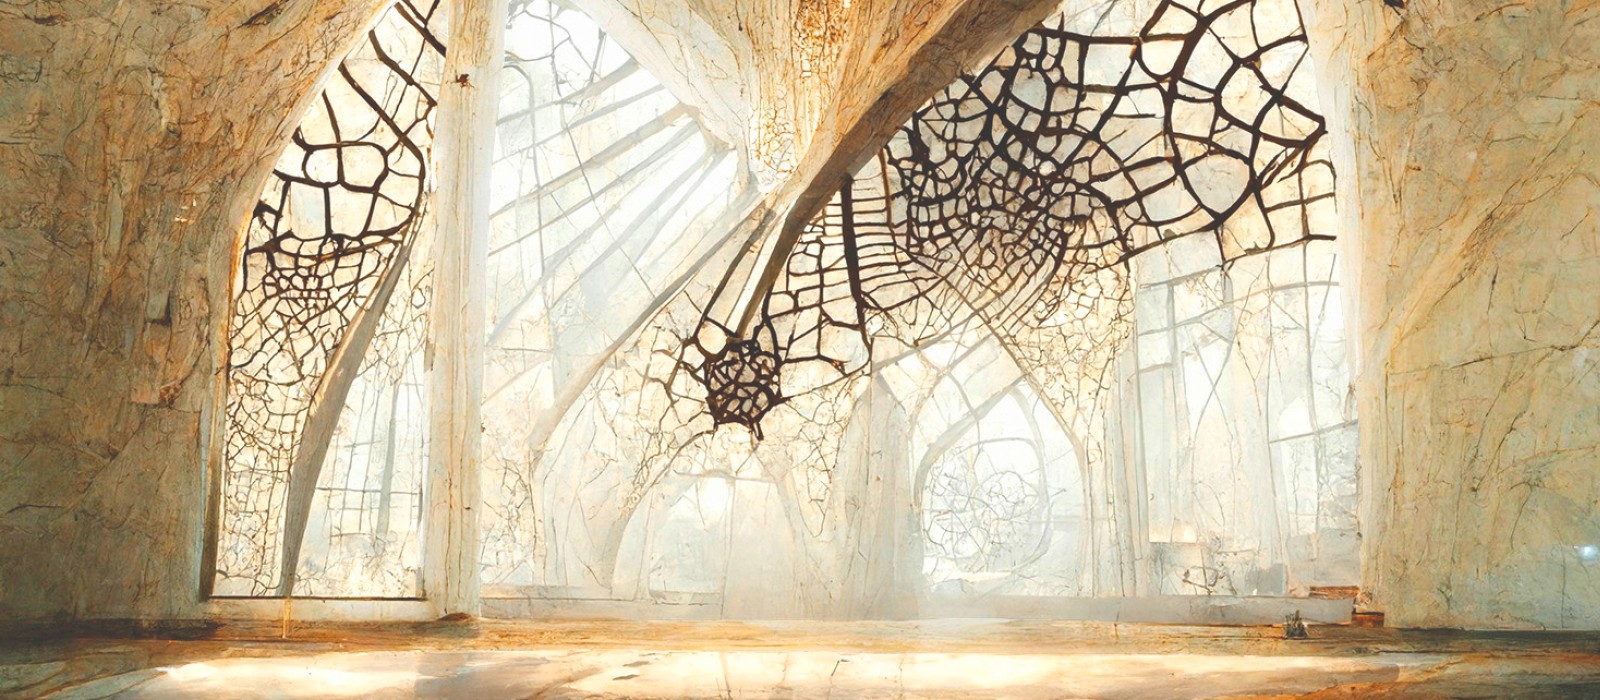 Von KI erstelltes Bild zum Thema der Ausstellung "BioInspiration" im Technischen Museum Wien, das einen gotisch geformten Arkadengang zeigt, der einem Spinnennetz ähnelt.